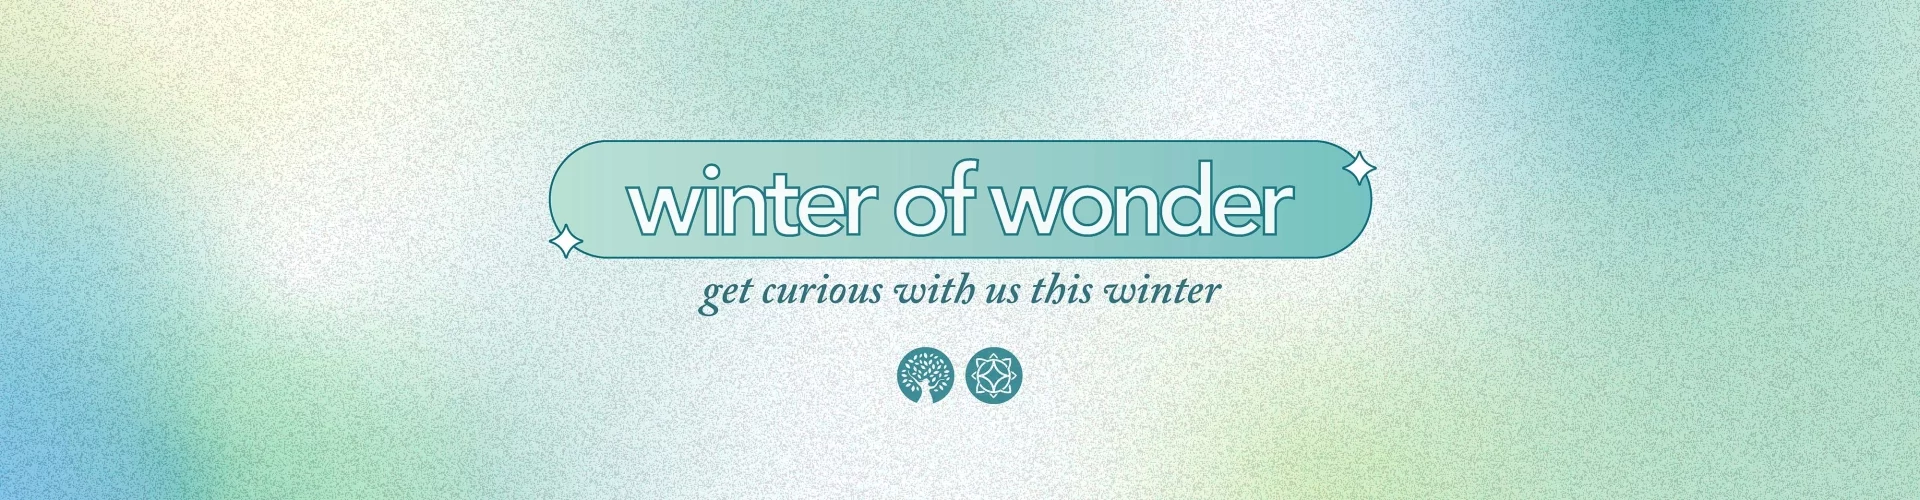 winter of wonder banner